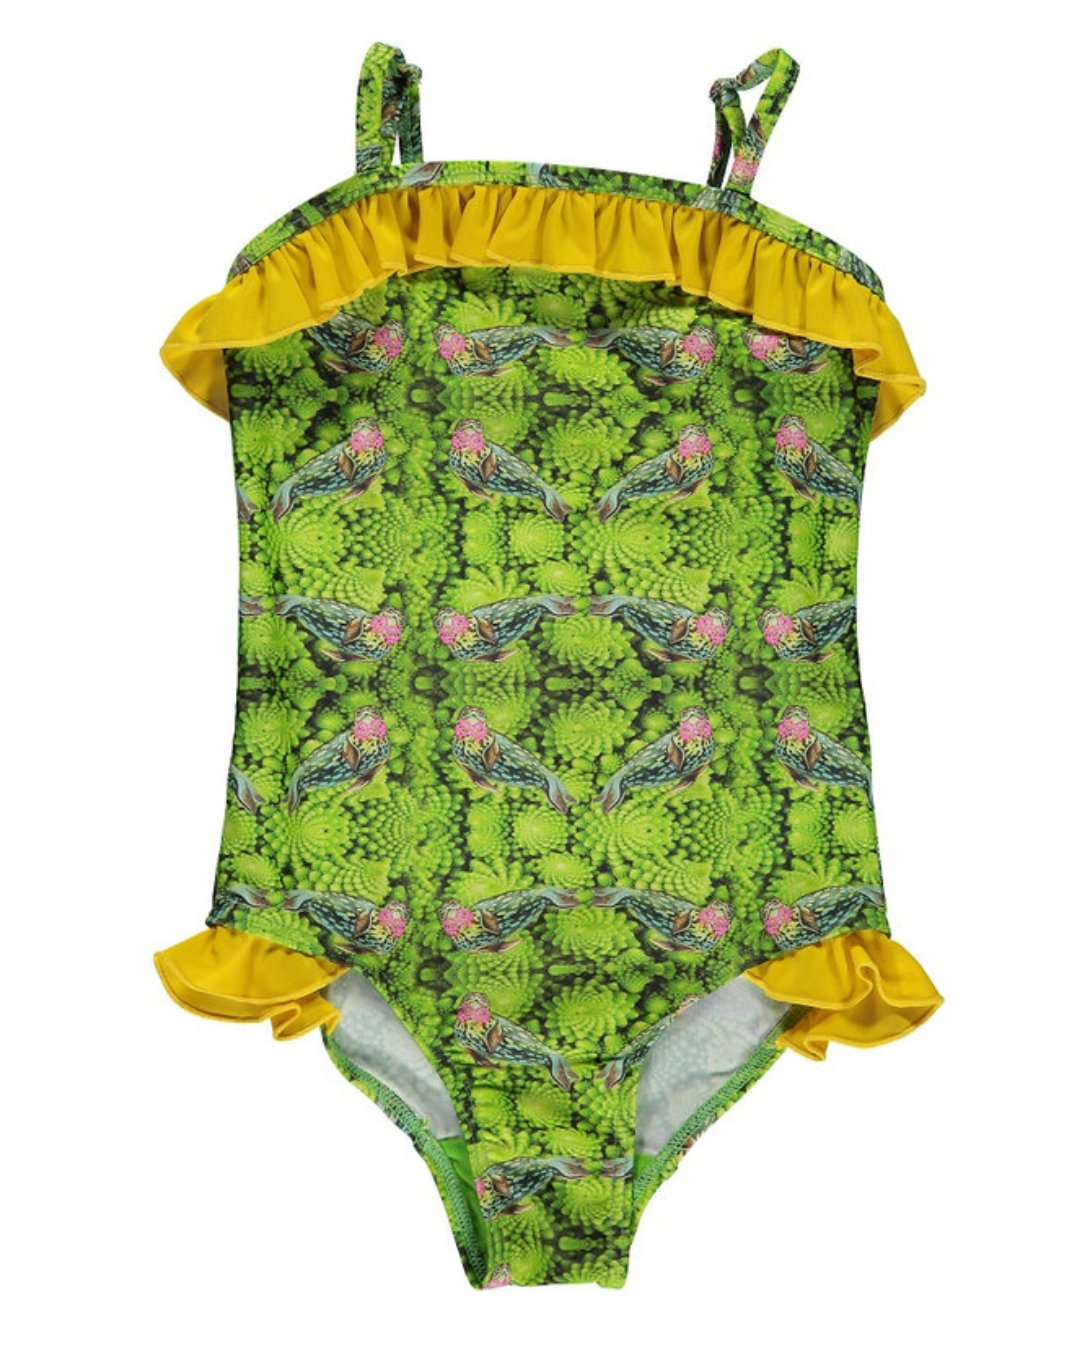 Grüner Badeanzug mit gelben Rüschen an Beinausschnitt und am oberen Saum, Brokkoli ORNAMENTE